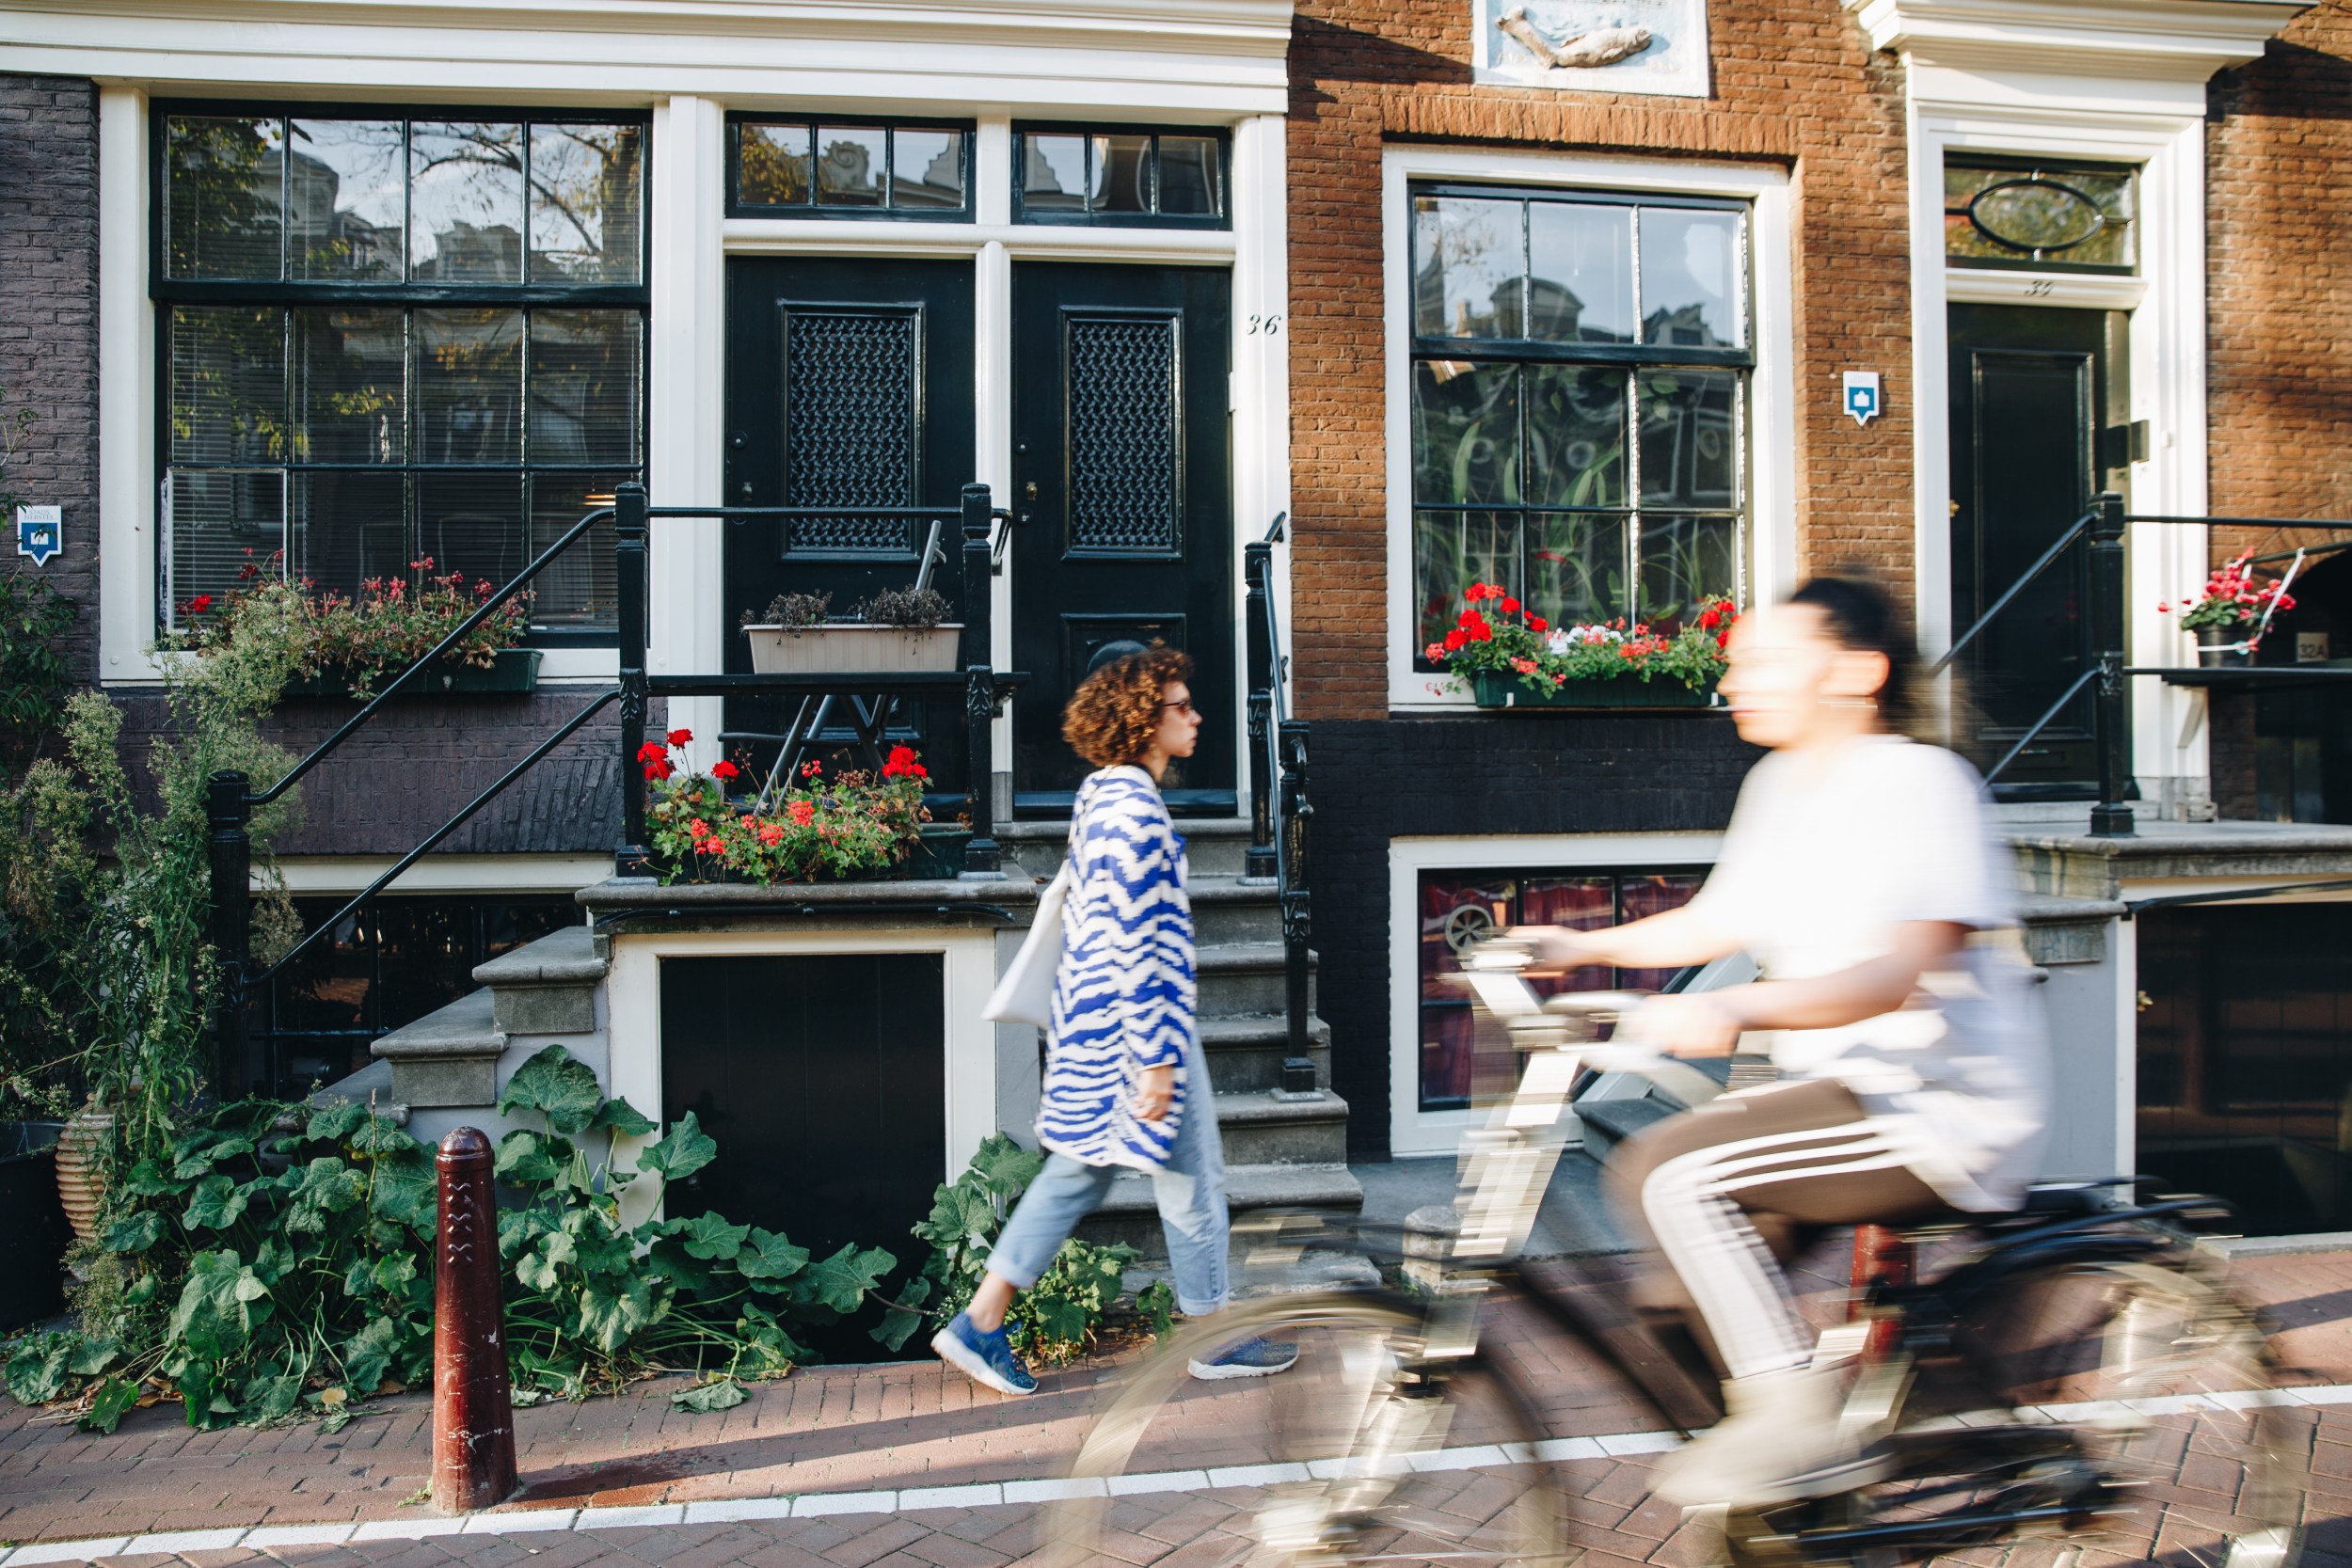 A neighbourhood in Amsterdam